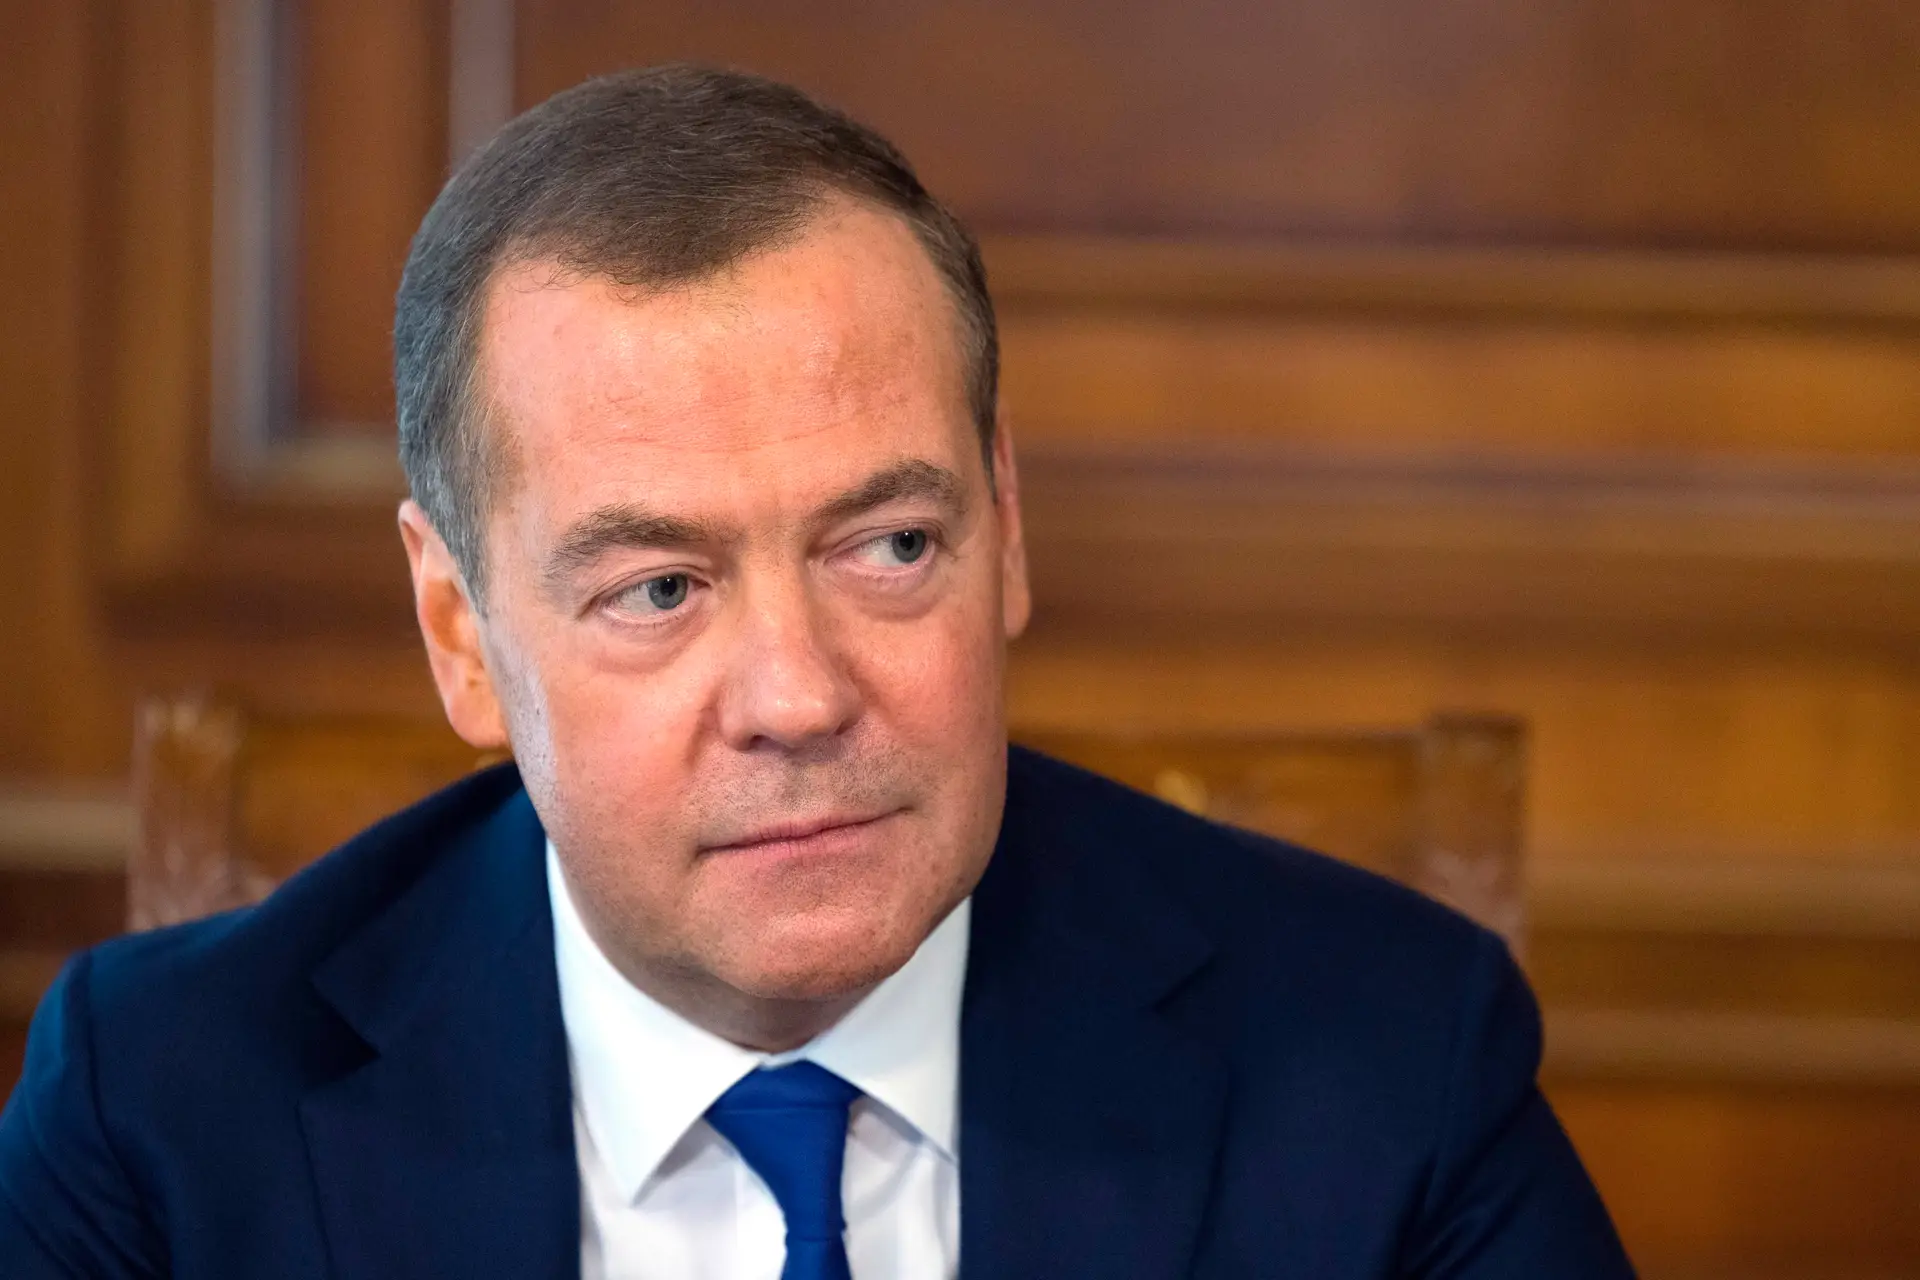 Tropas russas "podem chegar" a Kiev "caso seja necessário", diz Medvedev